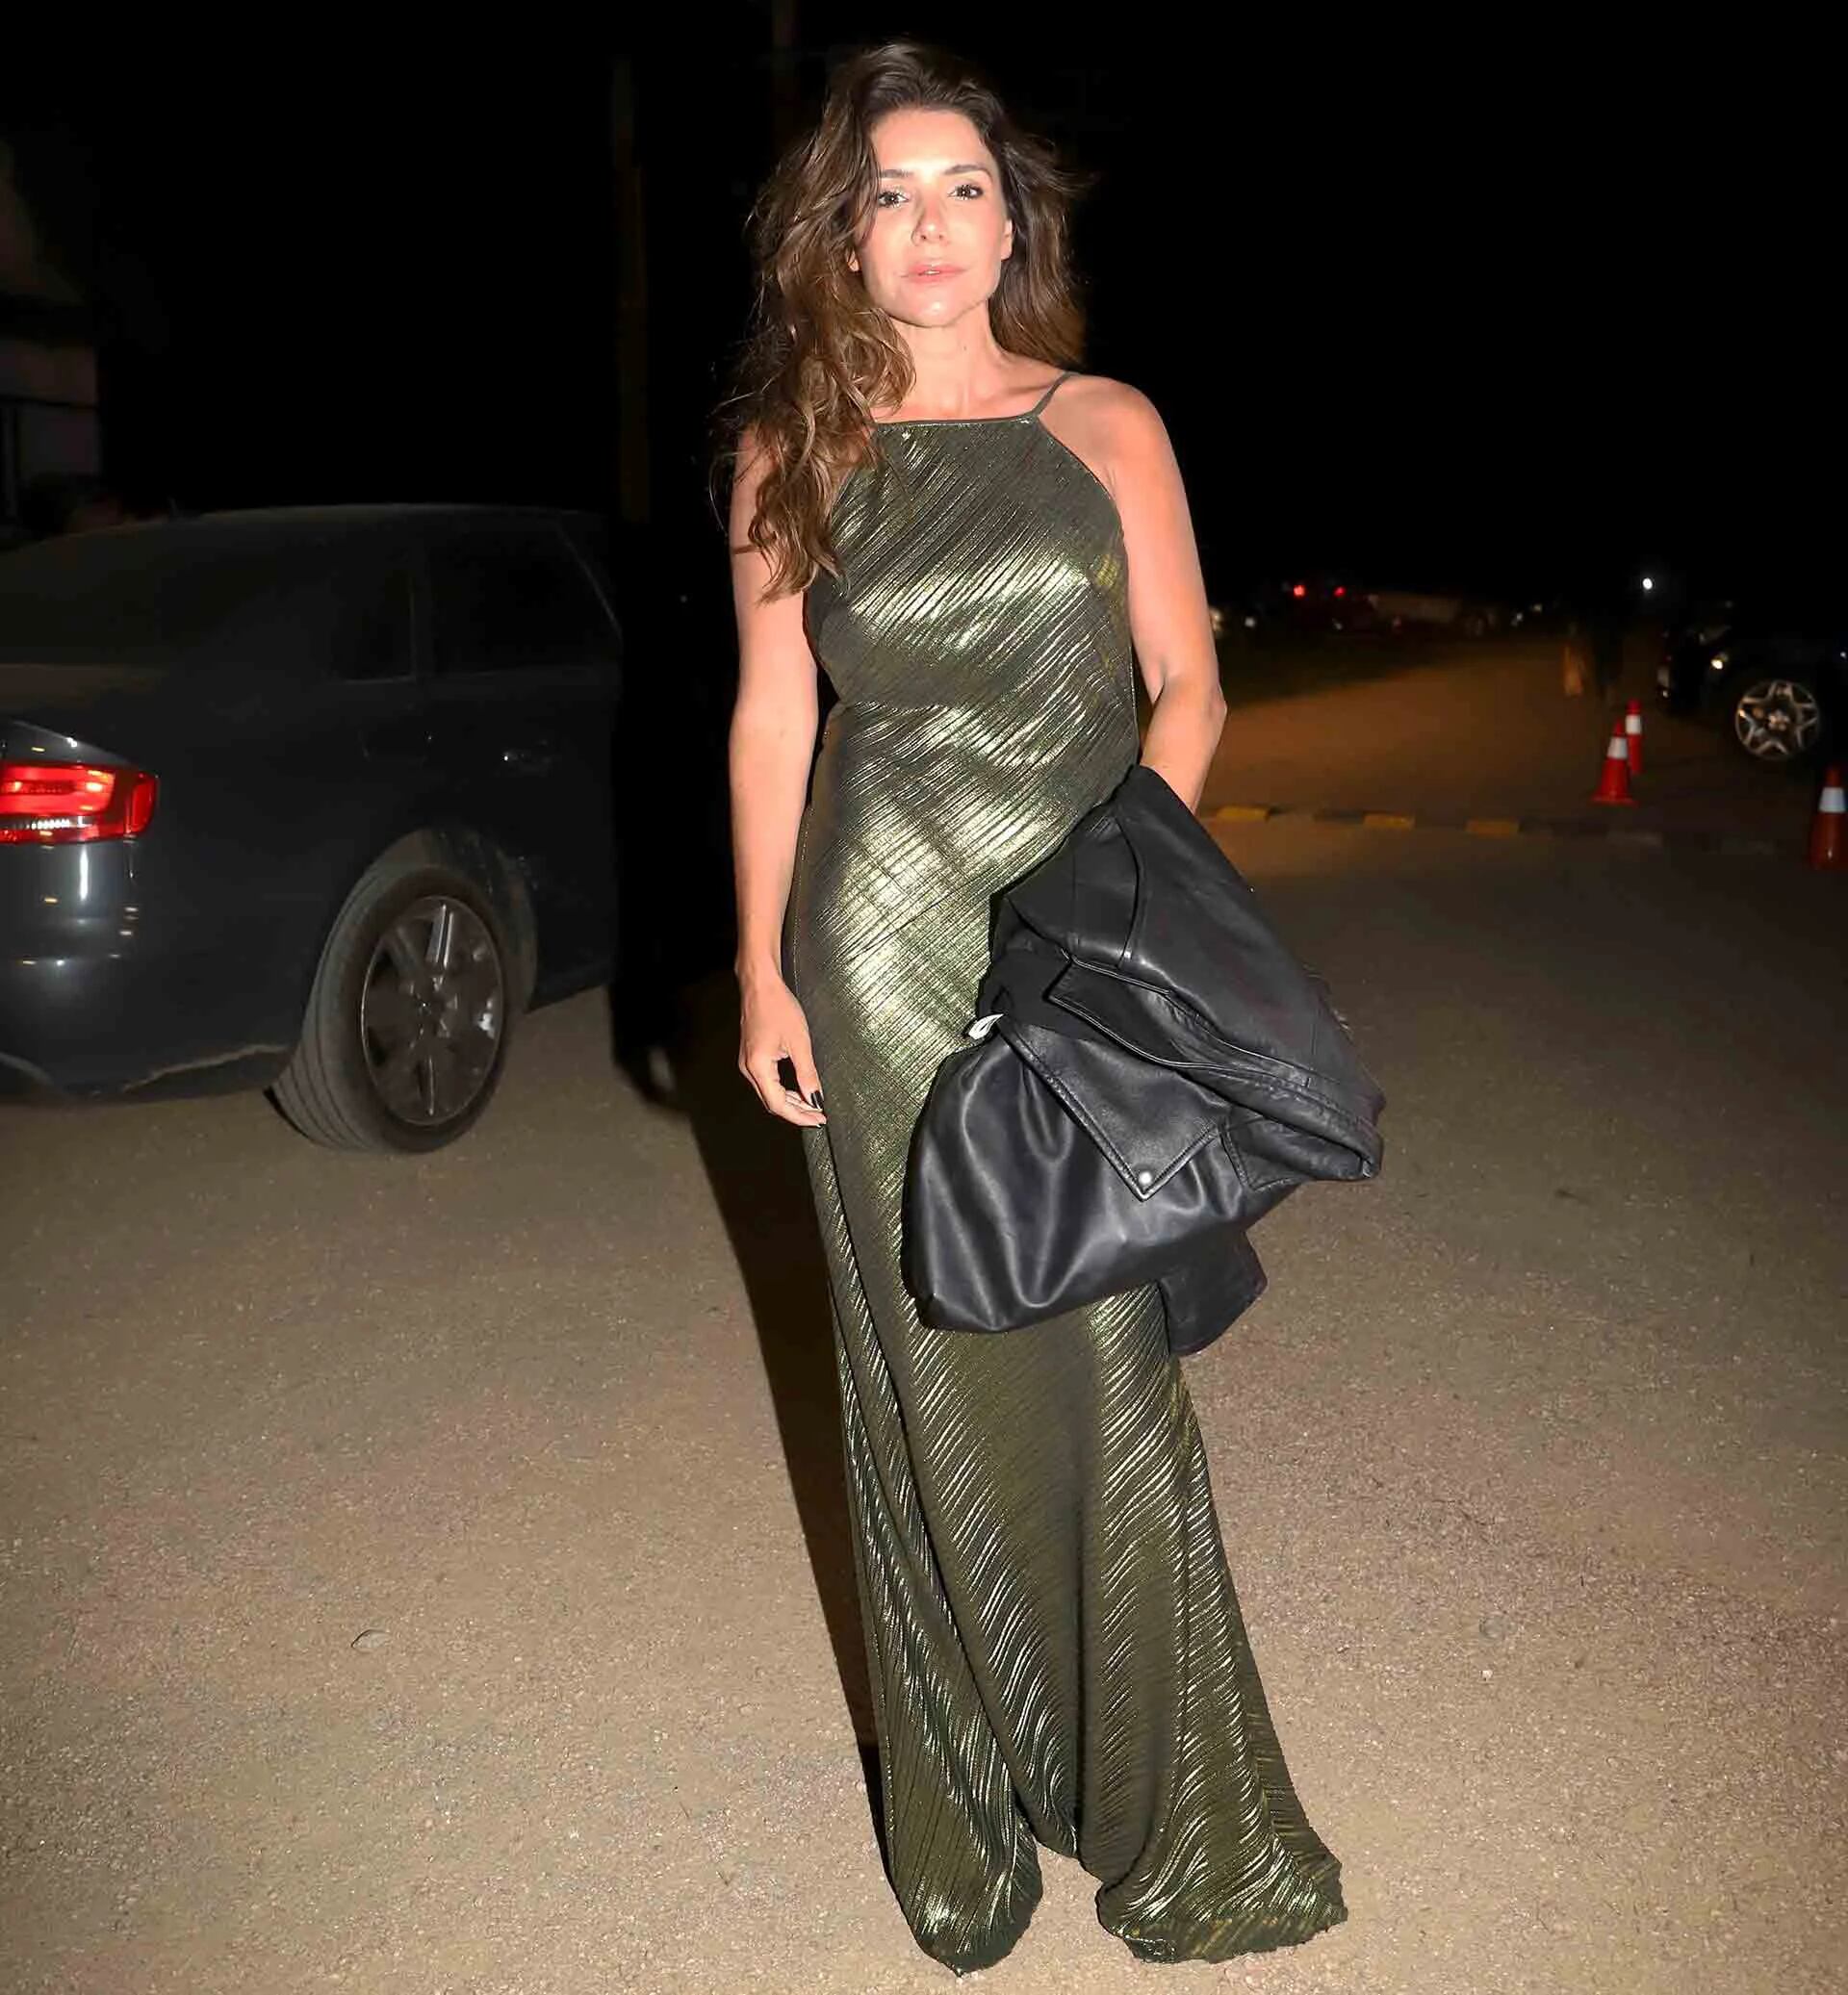 Romina Pigretti escogió un vestido largo metalizado, una de las tendencias del verano 2020